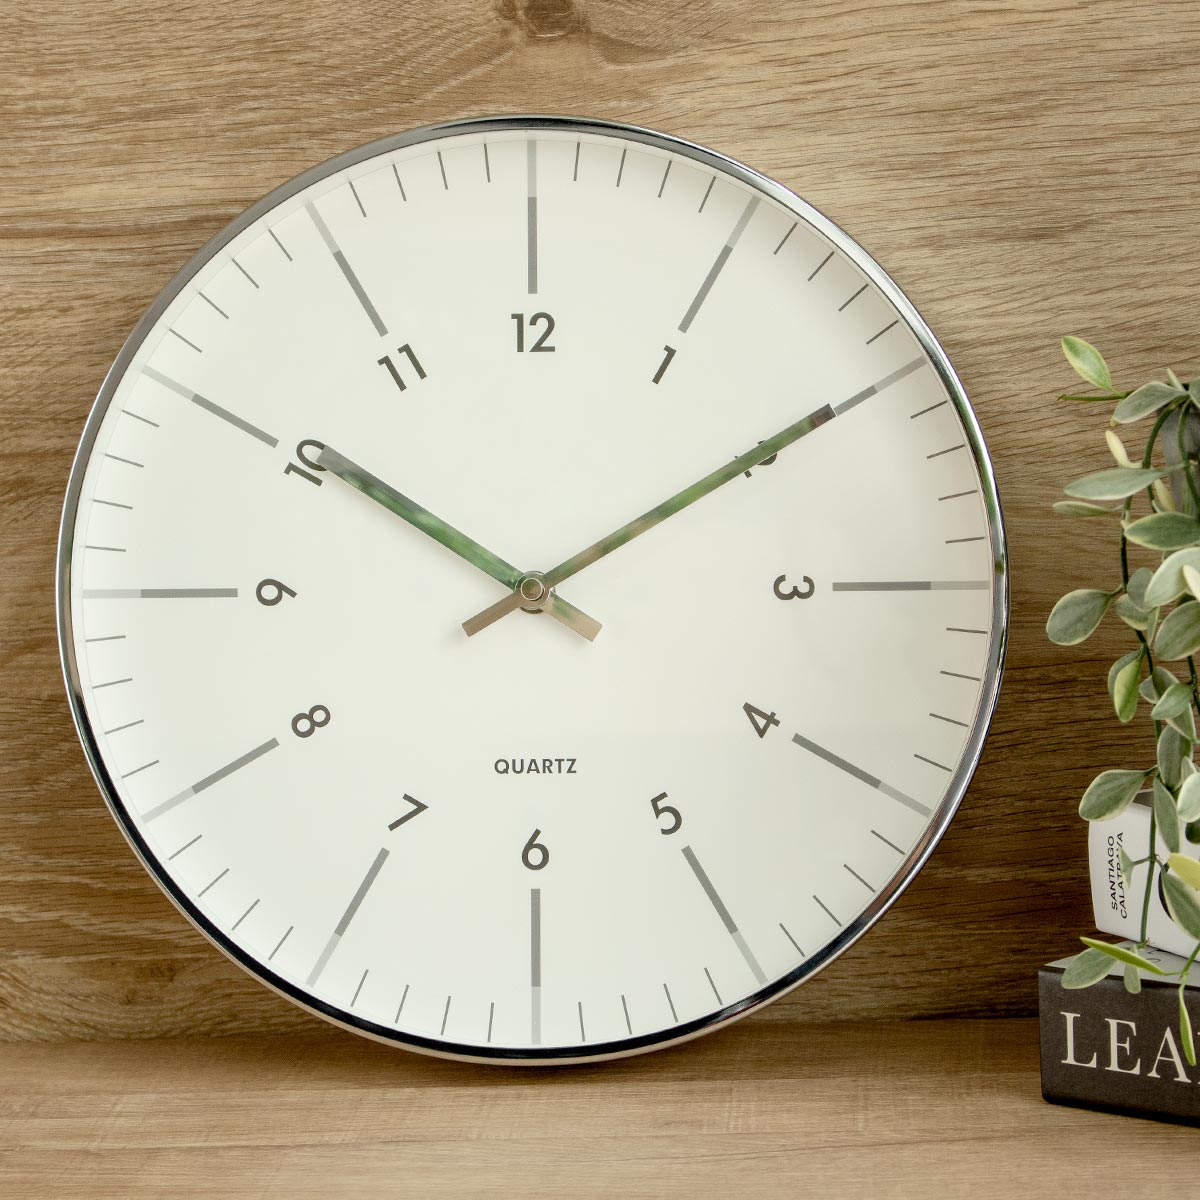 掛け時計 BLUEANT クラシッククロック ホワイト×シルバー （ 北欧 かけ時計 掛時計 壁掛け時計 アナログ インテリア 壁掛け 時計 とけい